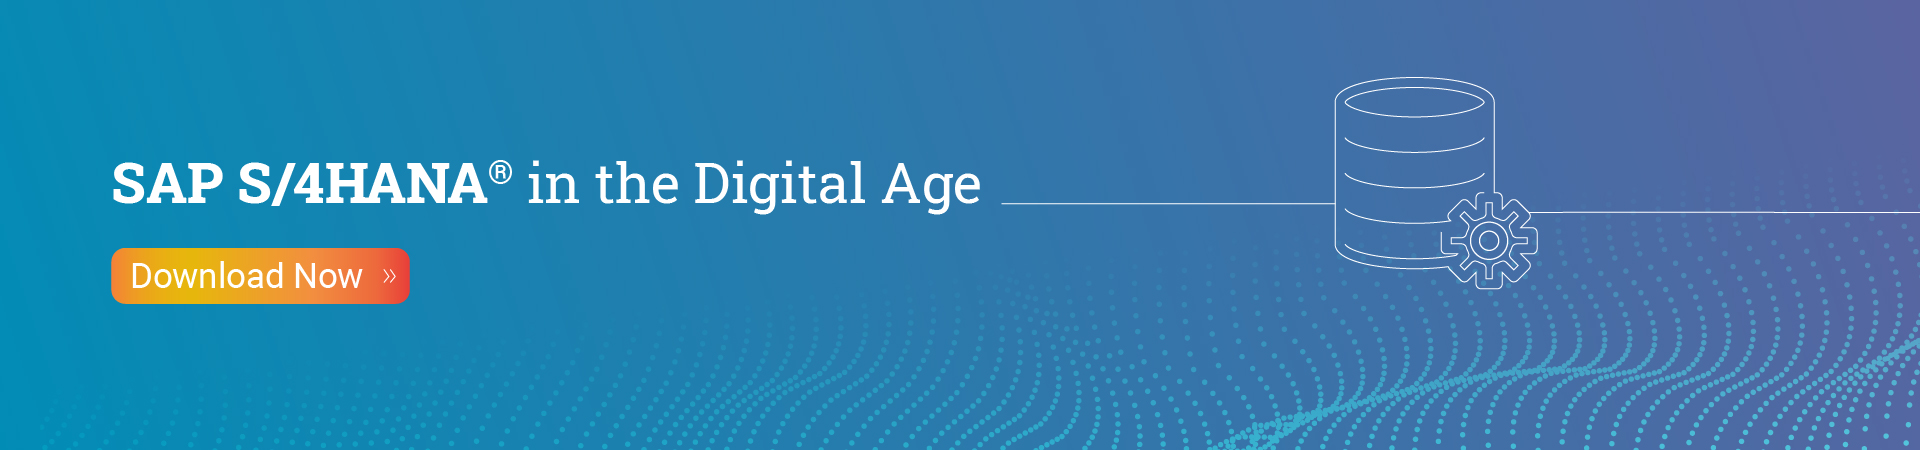 SAP S4HANA in the Digital Age